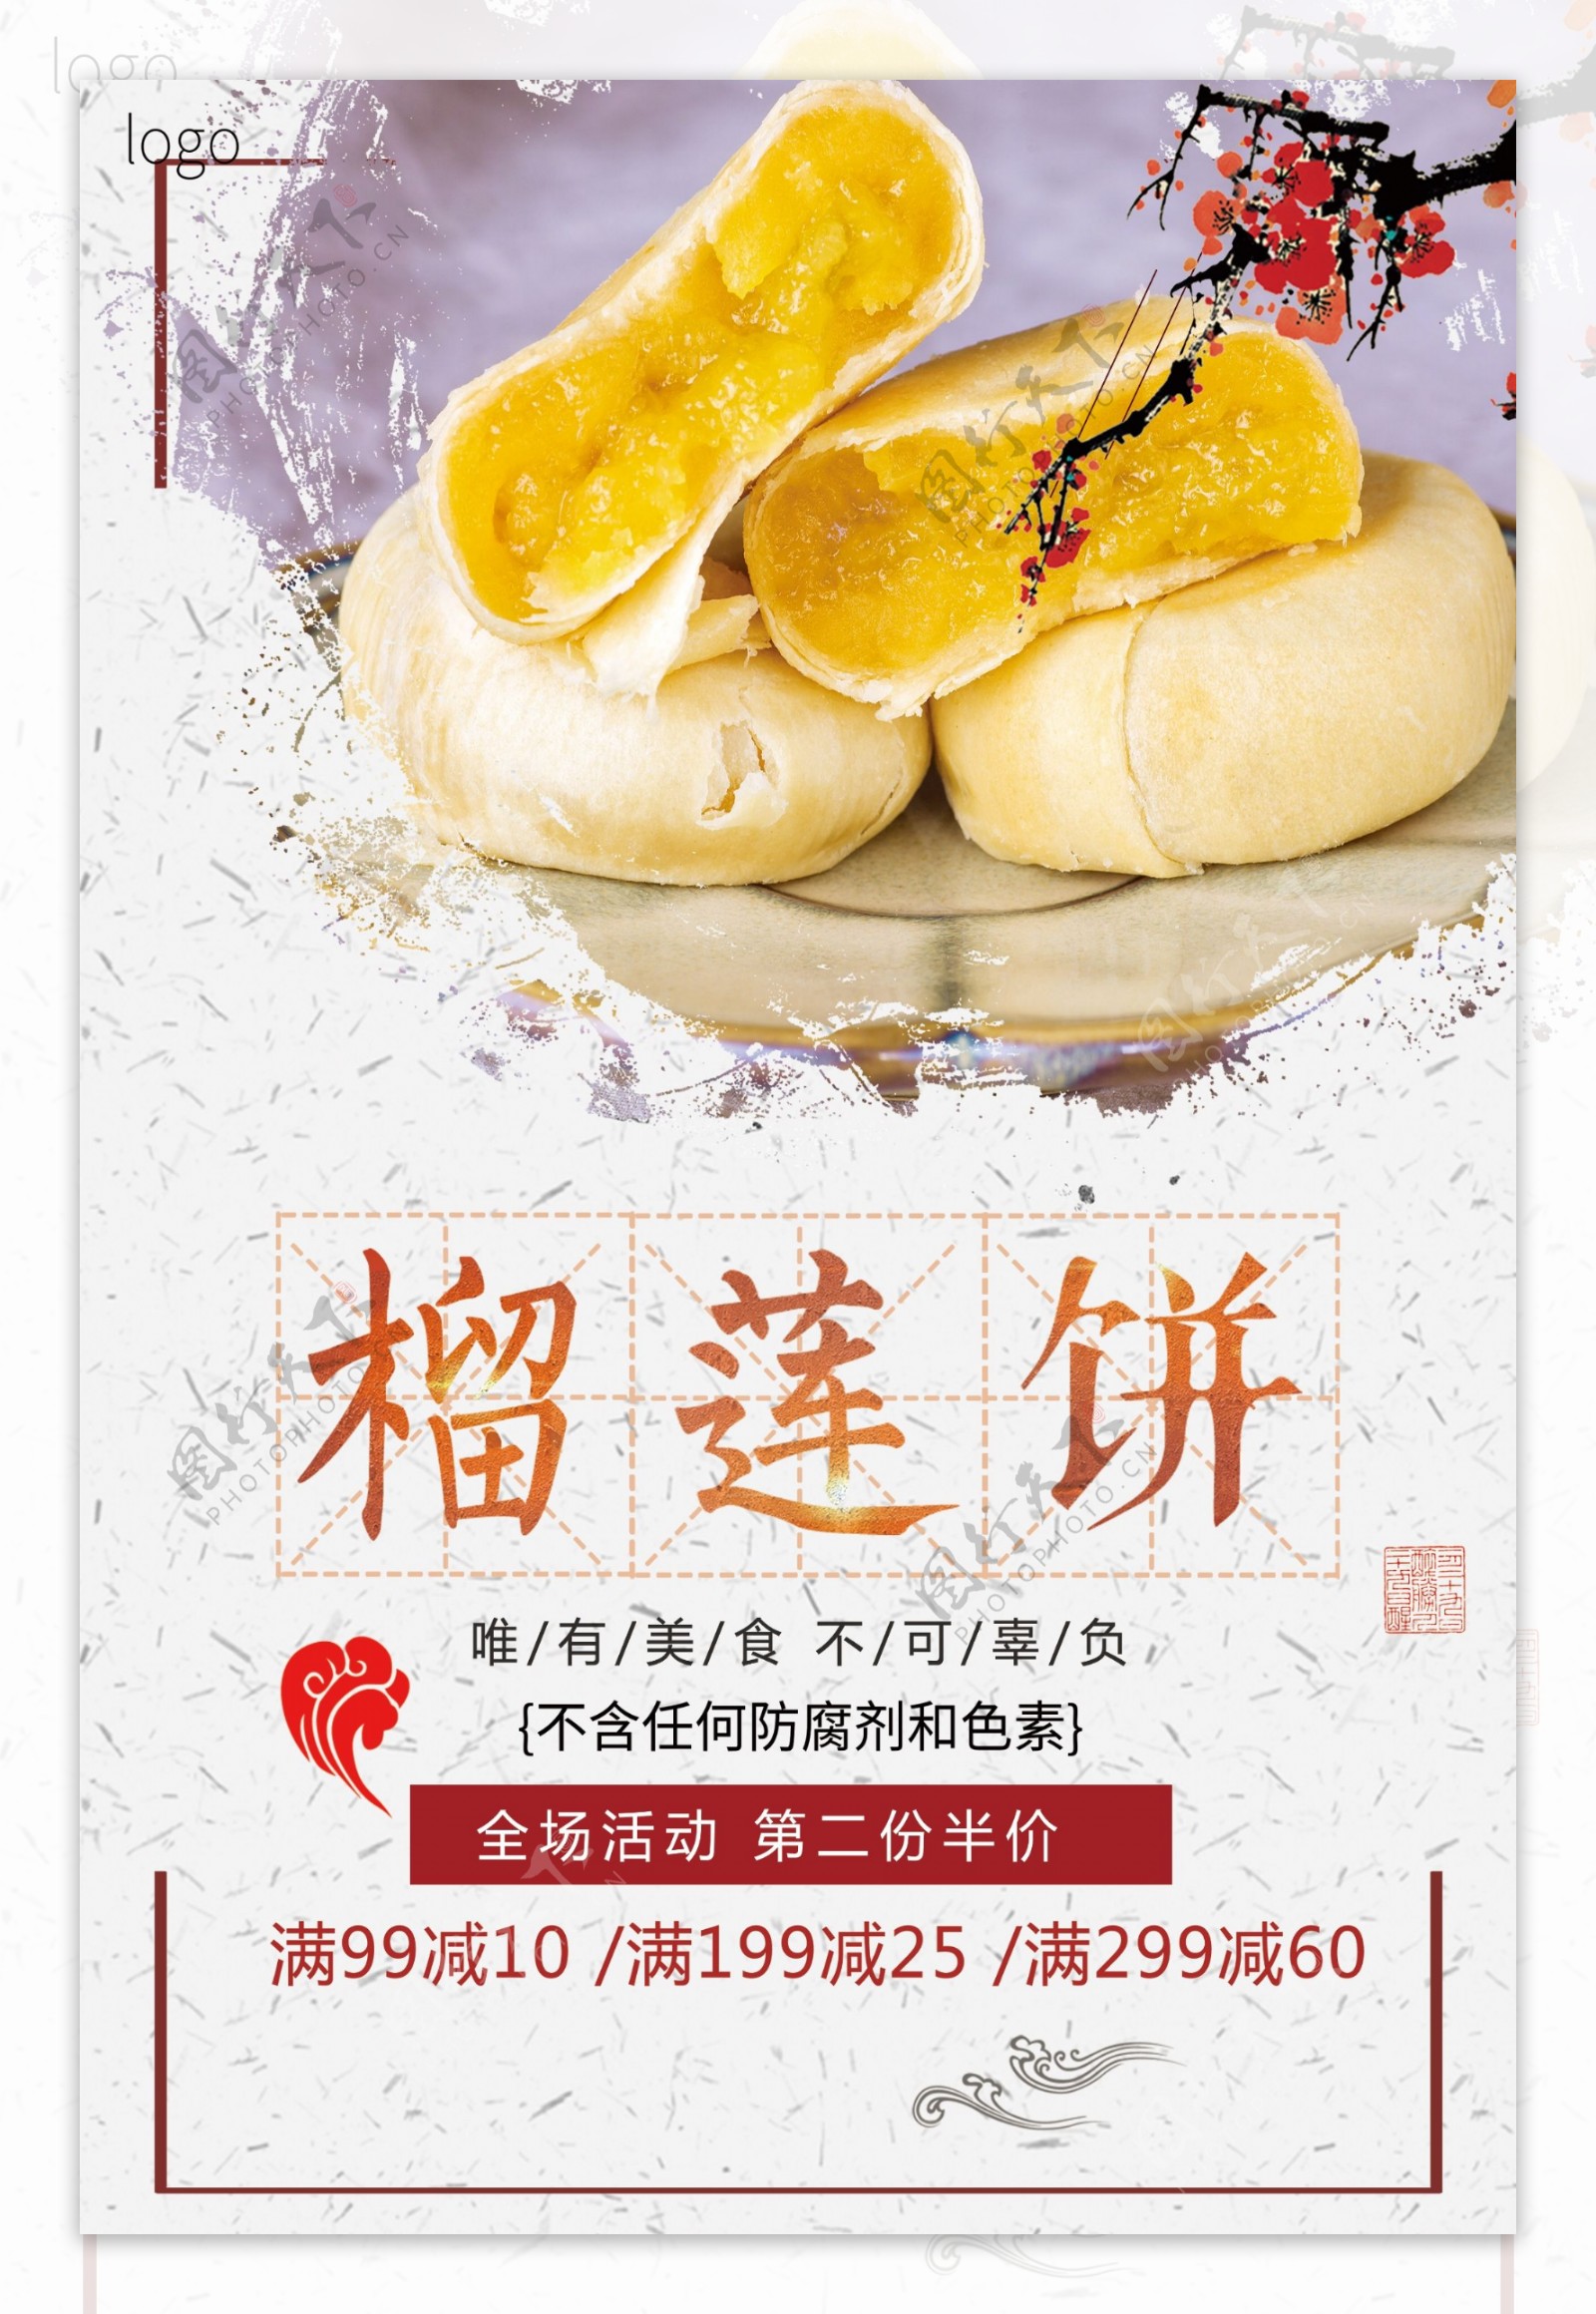 白色背景简约大气中国风美味榴莲饼宣传海报